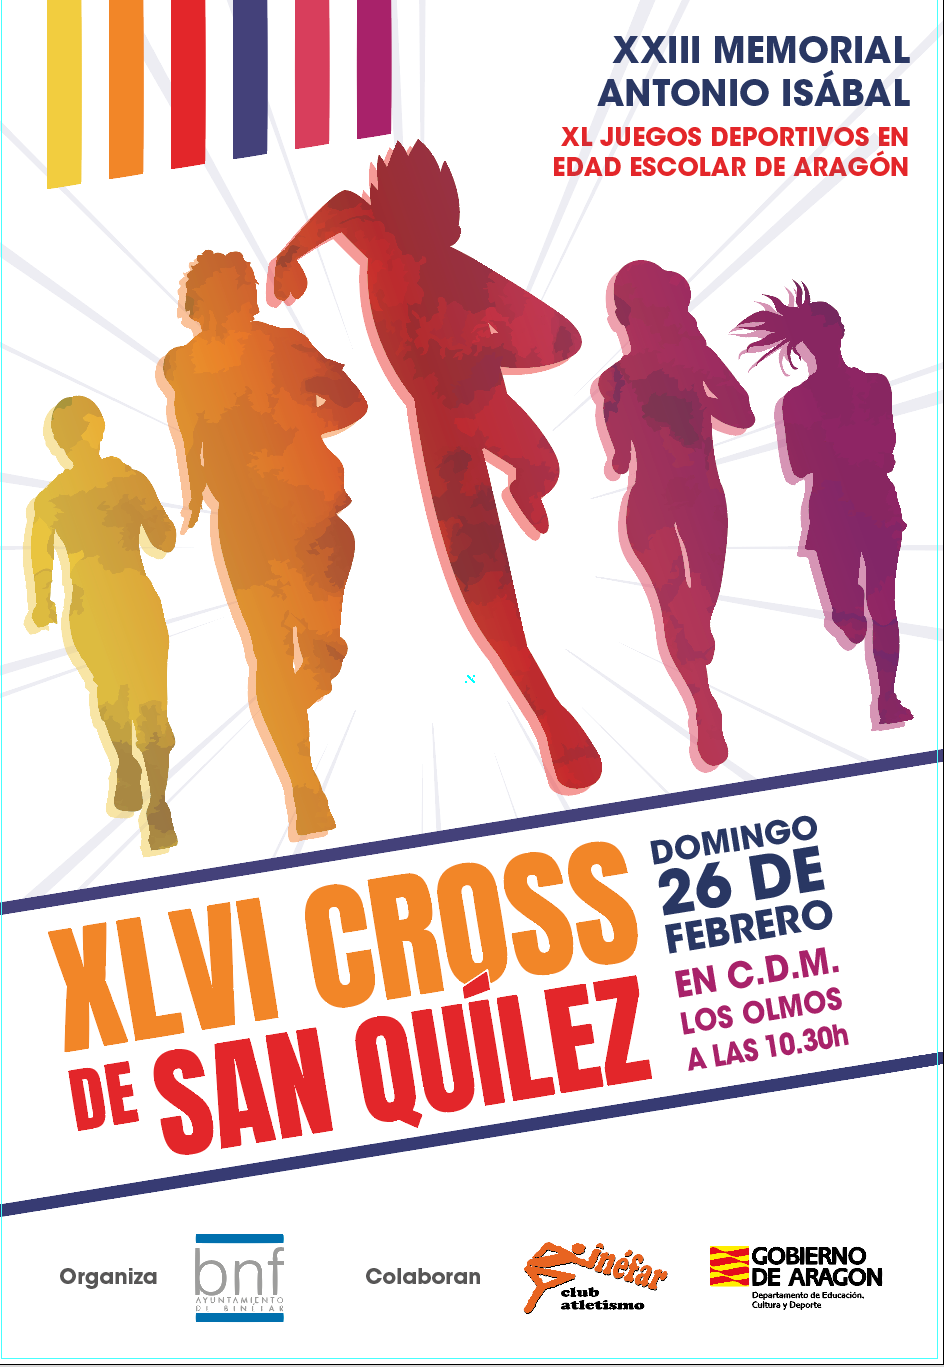 Convocado el XLVI Cross de San Quílez, que se celebrará el 26 de febrero en el CDM Los Olmos de Binéfar